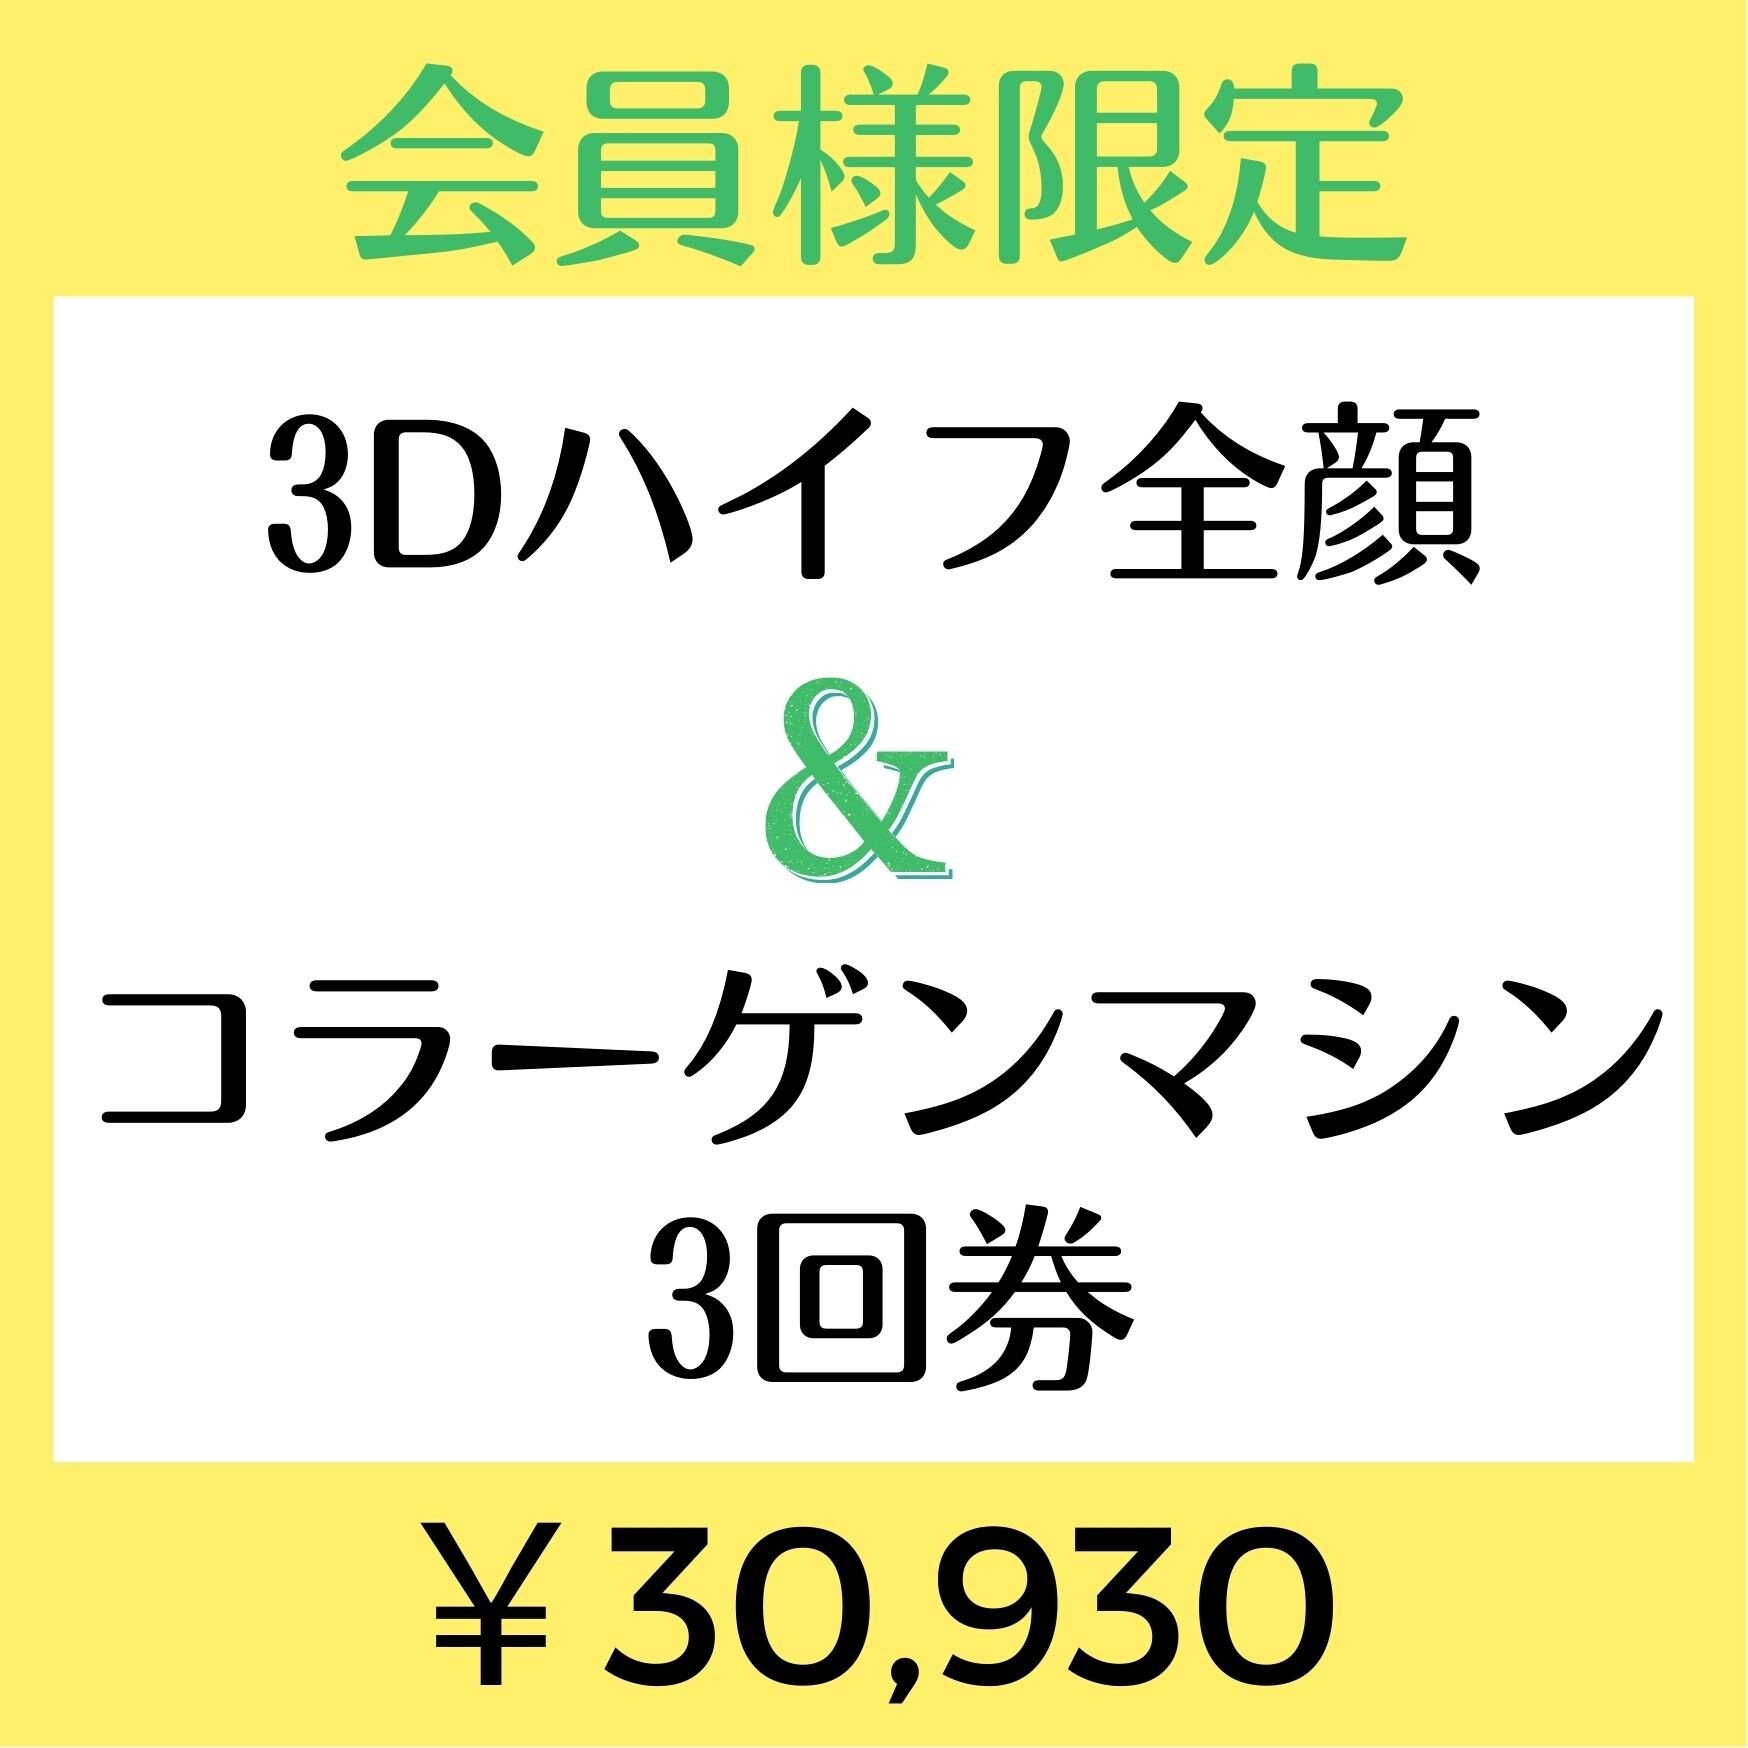 【会員様限定￥30930】3Dハイフ全顔&コラーゲンマシンセット3回券